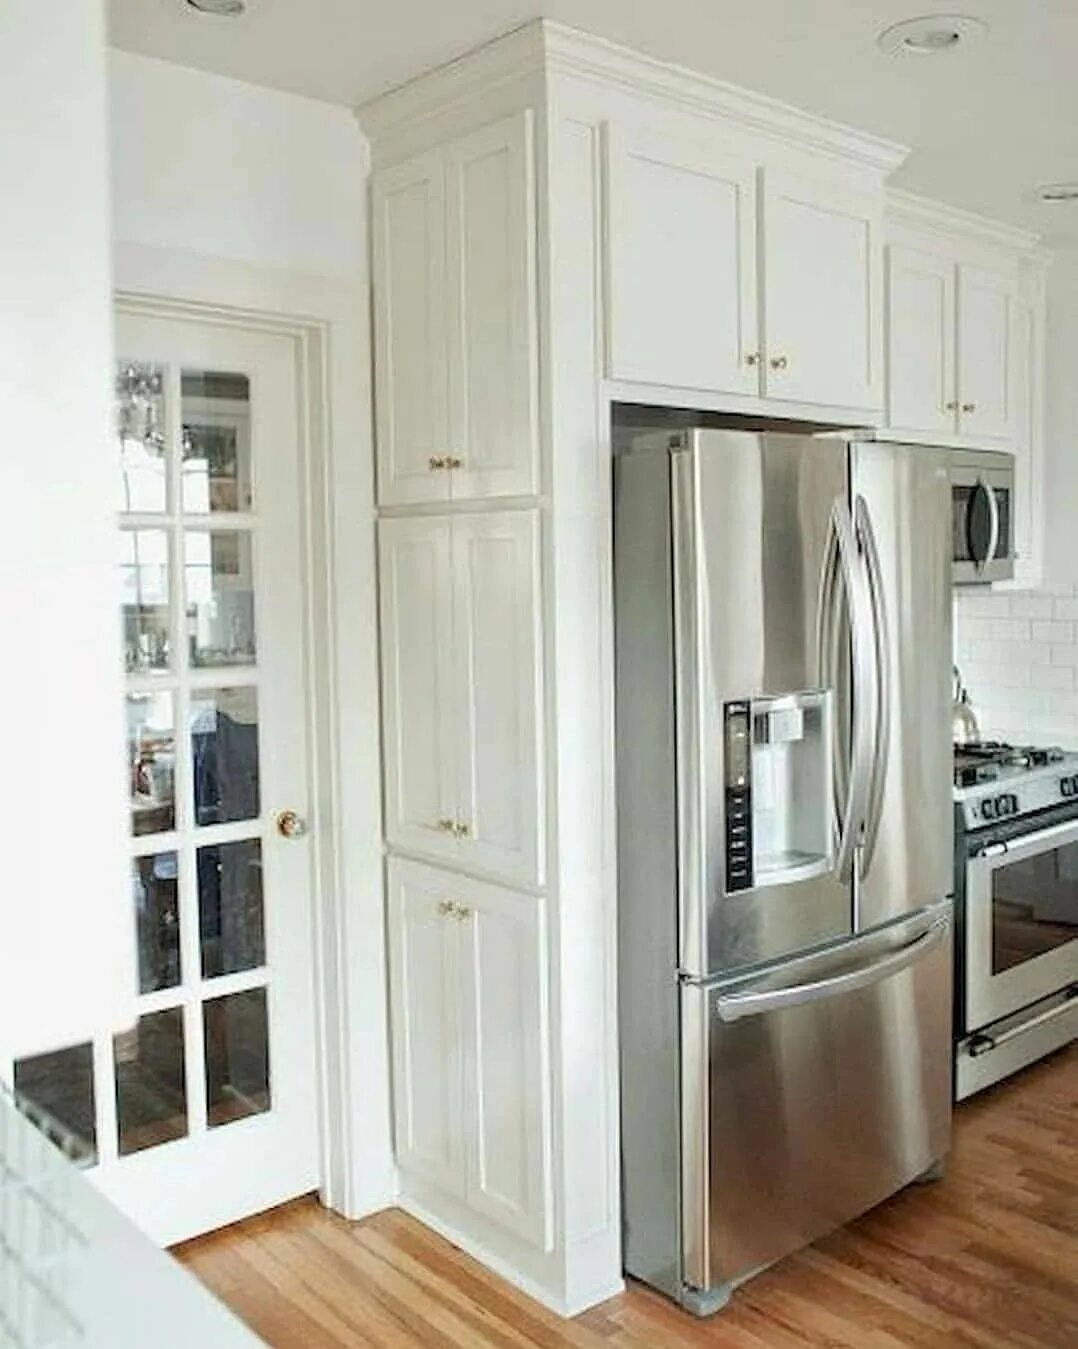 Как можно закрыть холодильник. Холодильник Side by Side в интерьере. Холодильник Сайд бай Сайд в интерьере Неоклассика. Холодильник Side by Side в интерьере кухни. Встроенный холодильник на кухне.